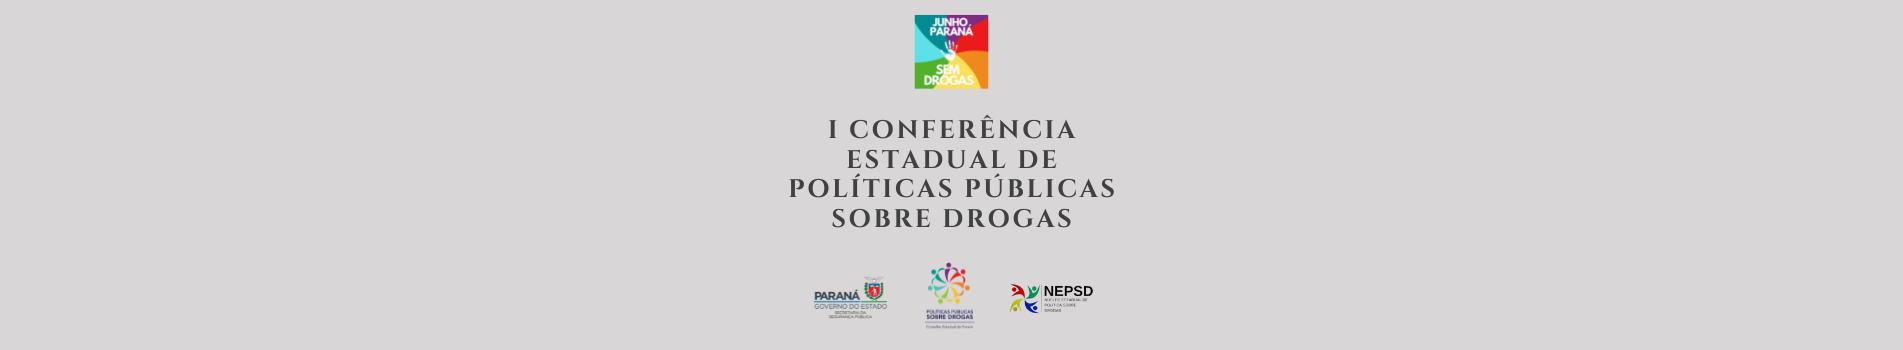 I Conferência Estadual de Políticas Públicas Sobre Drogas